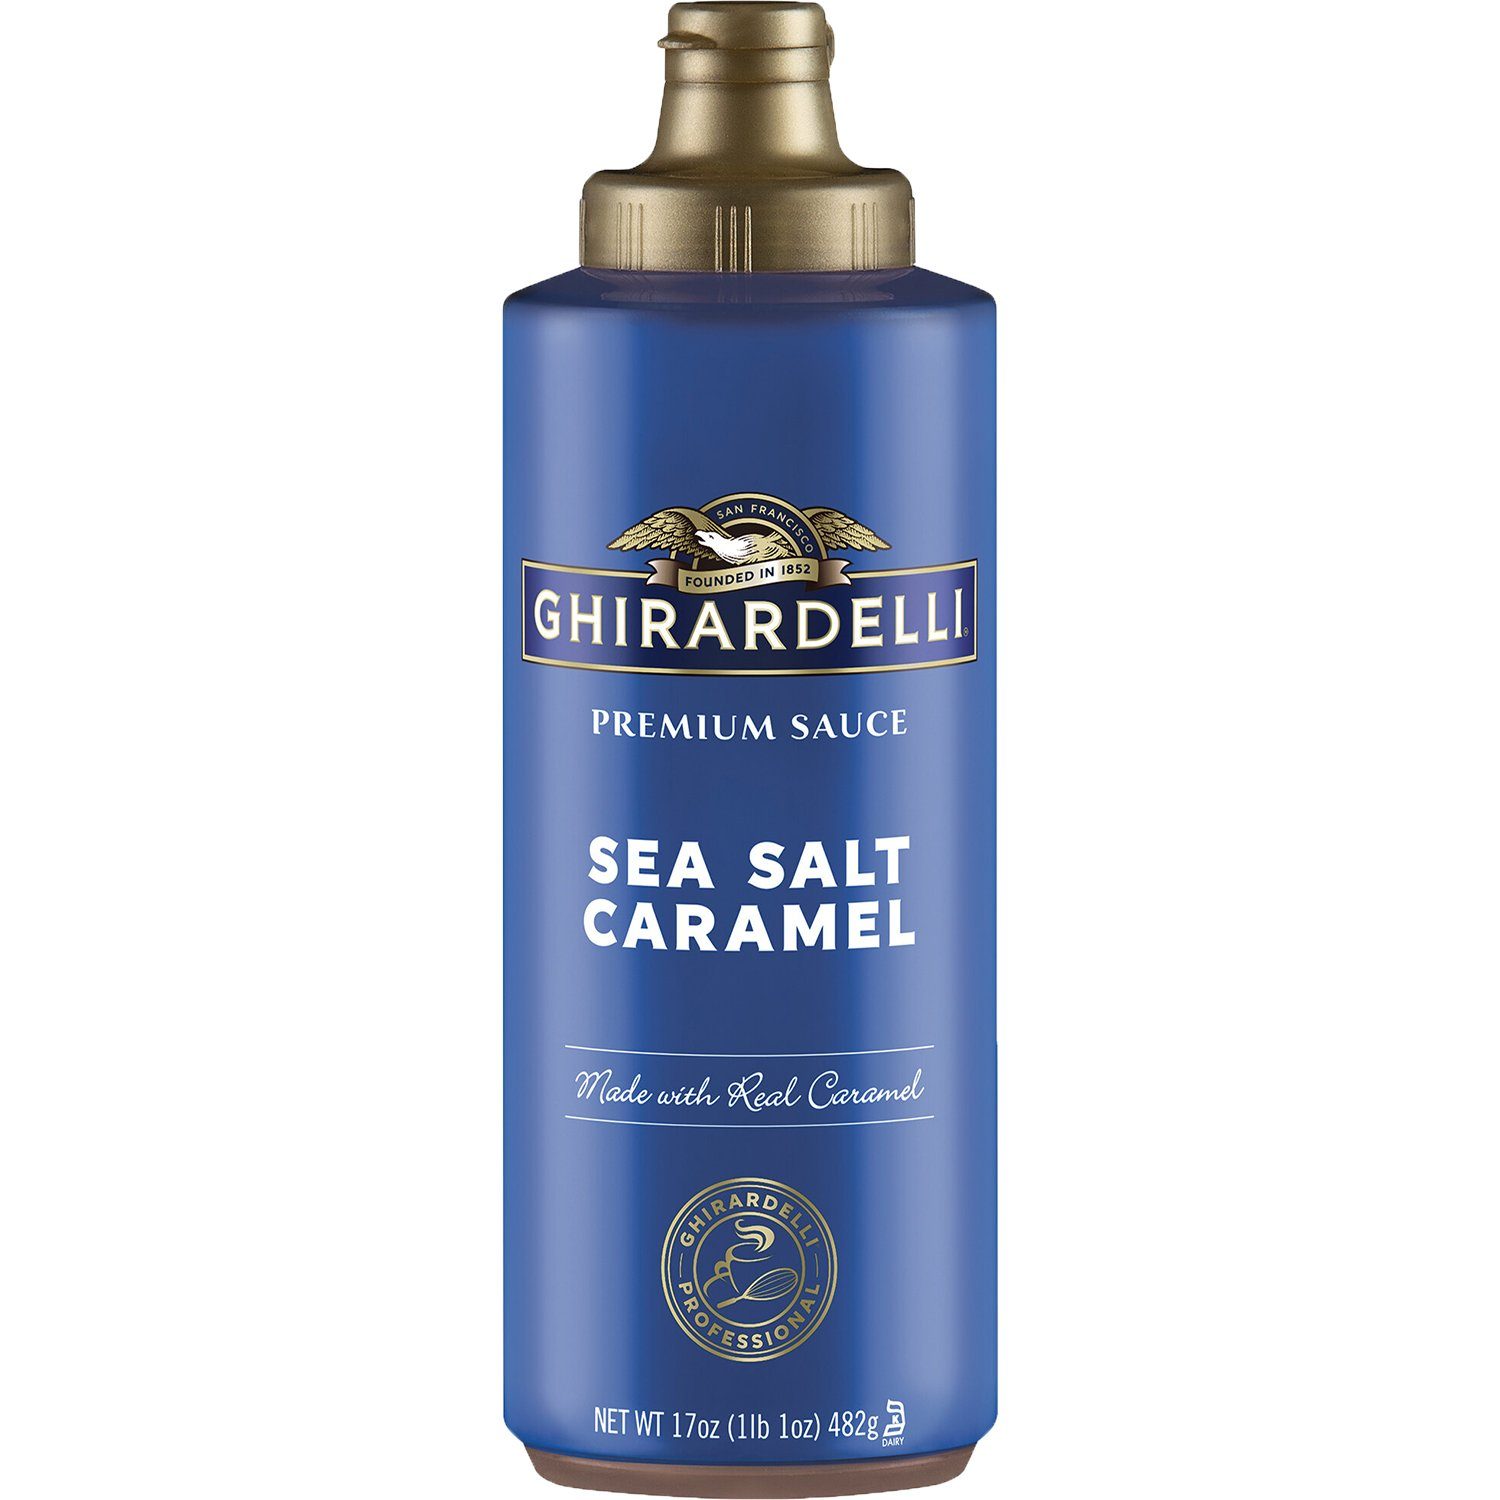 Ghirardelli Premium Sauce Ghirardelli Sea Salt Caramel 17 Ounce 